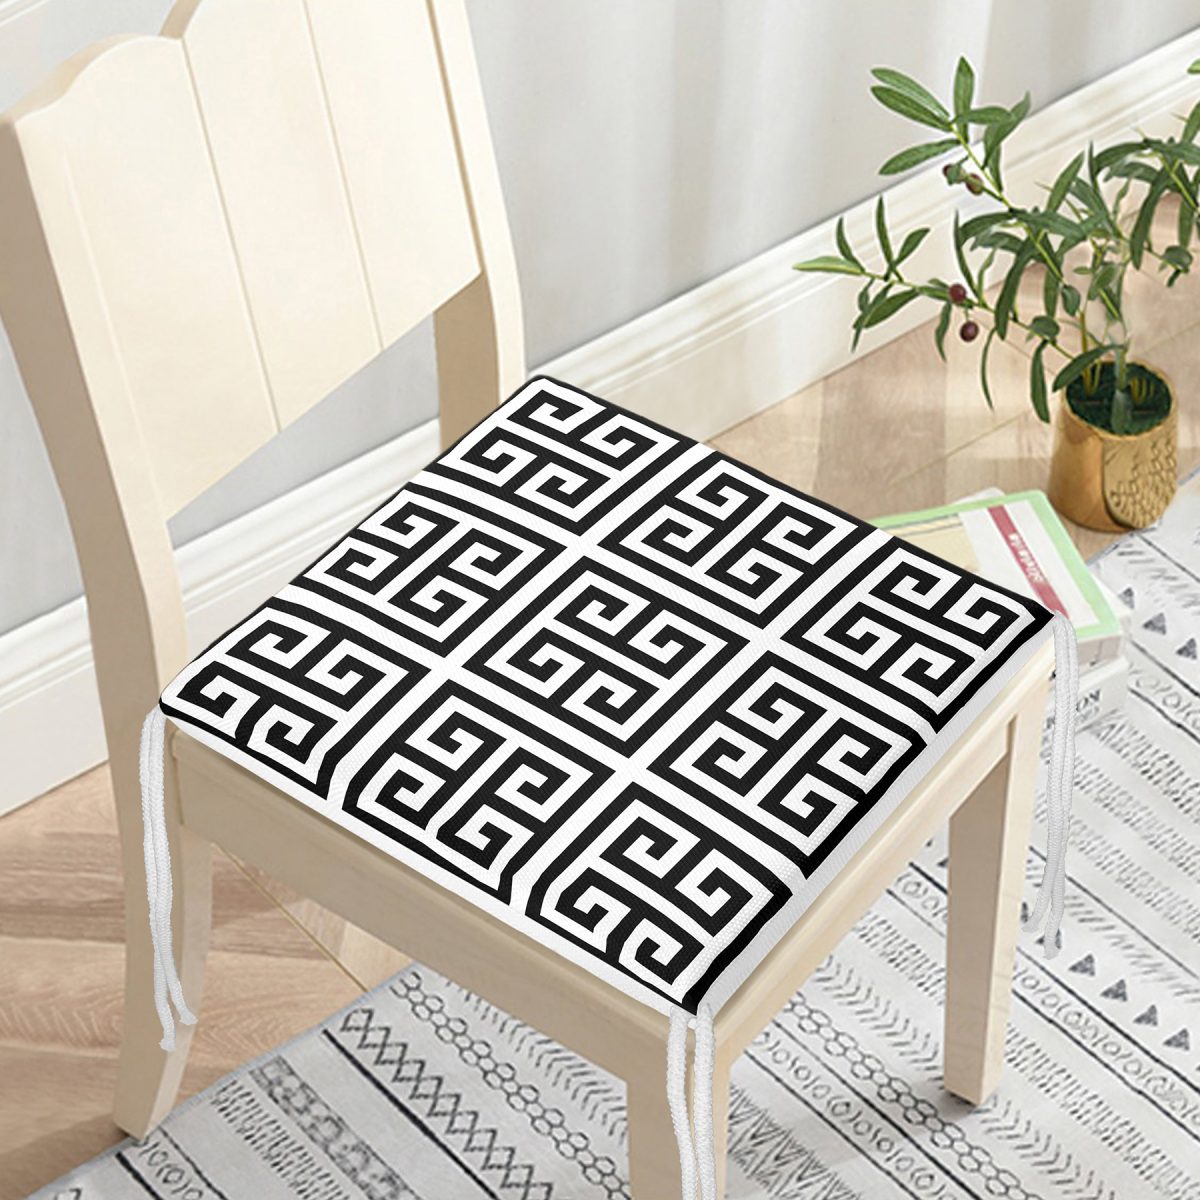 Özel Tasarım Crafts Motifli Dijital Baskılı Dekoratif Fermuarlı Sandalye Minderi Realhomes